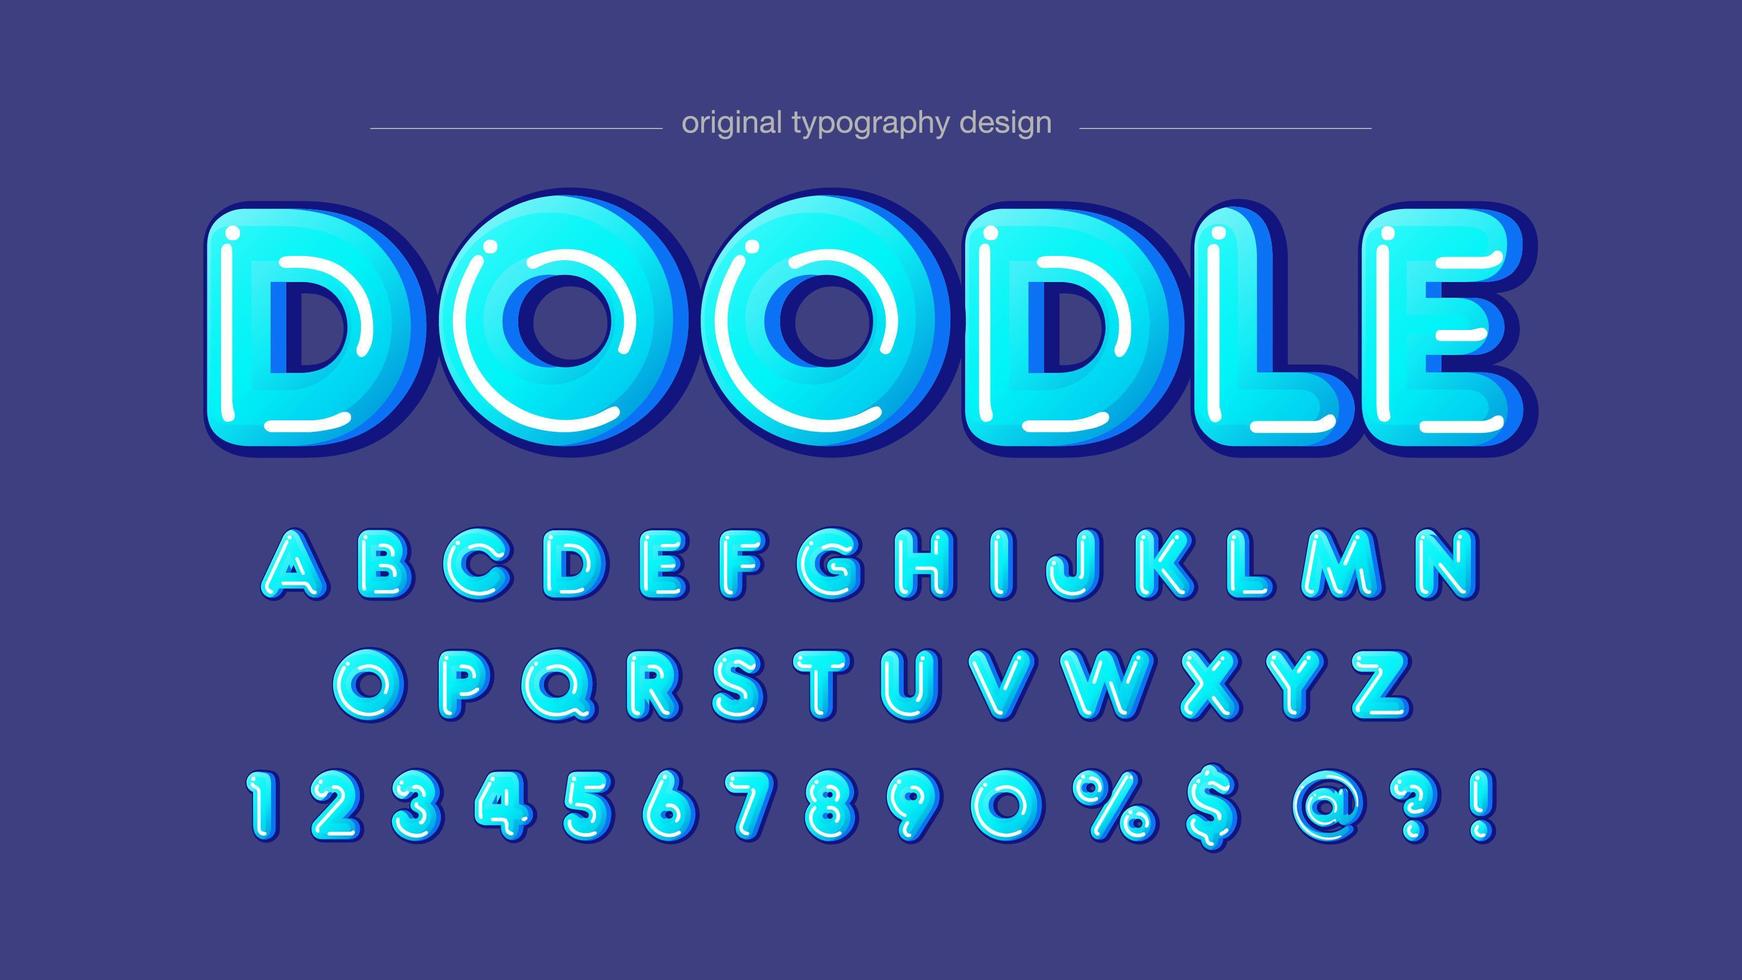 afgeronde blauwe zeepbel artistieke lettertype vector